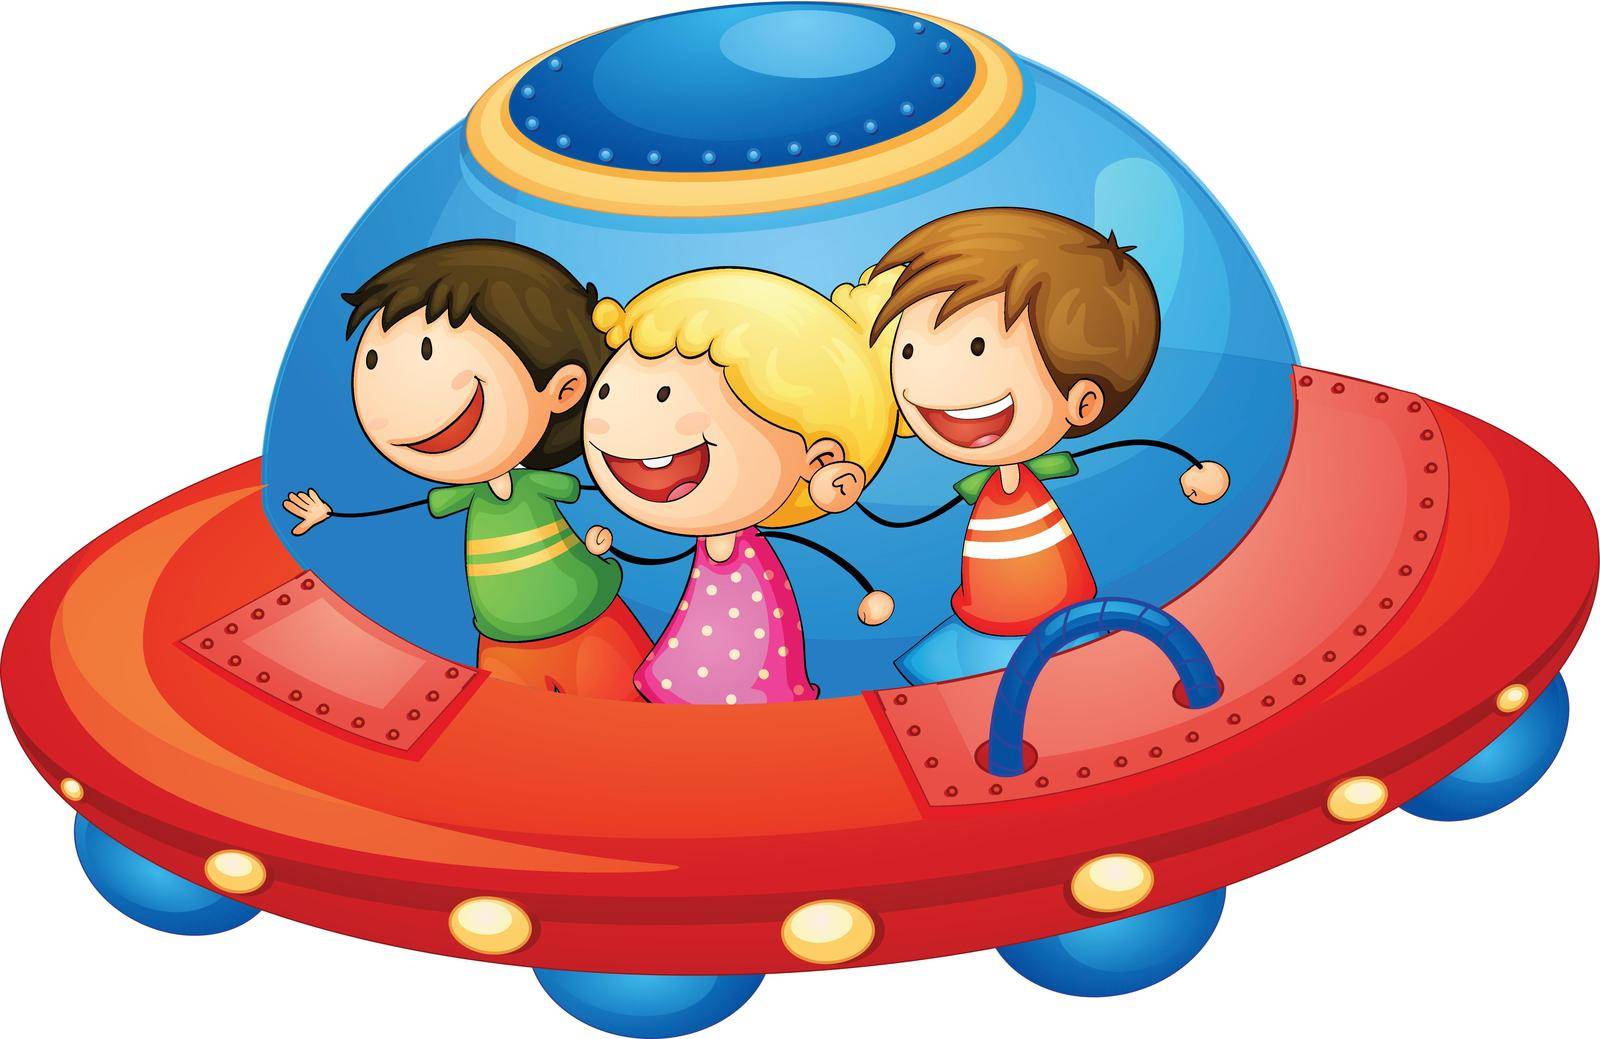 kids in spaceship by iimages